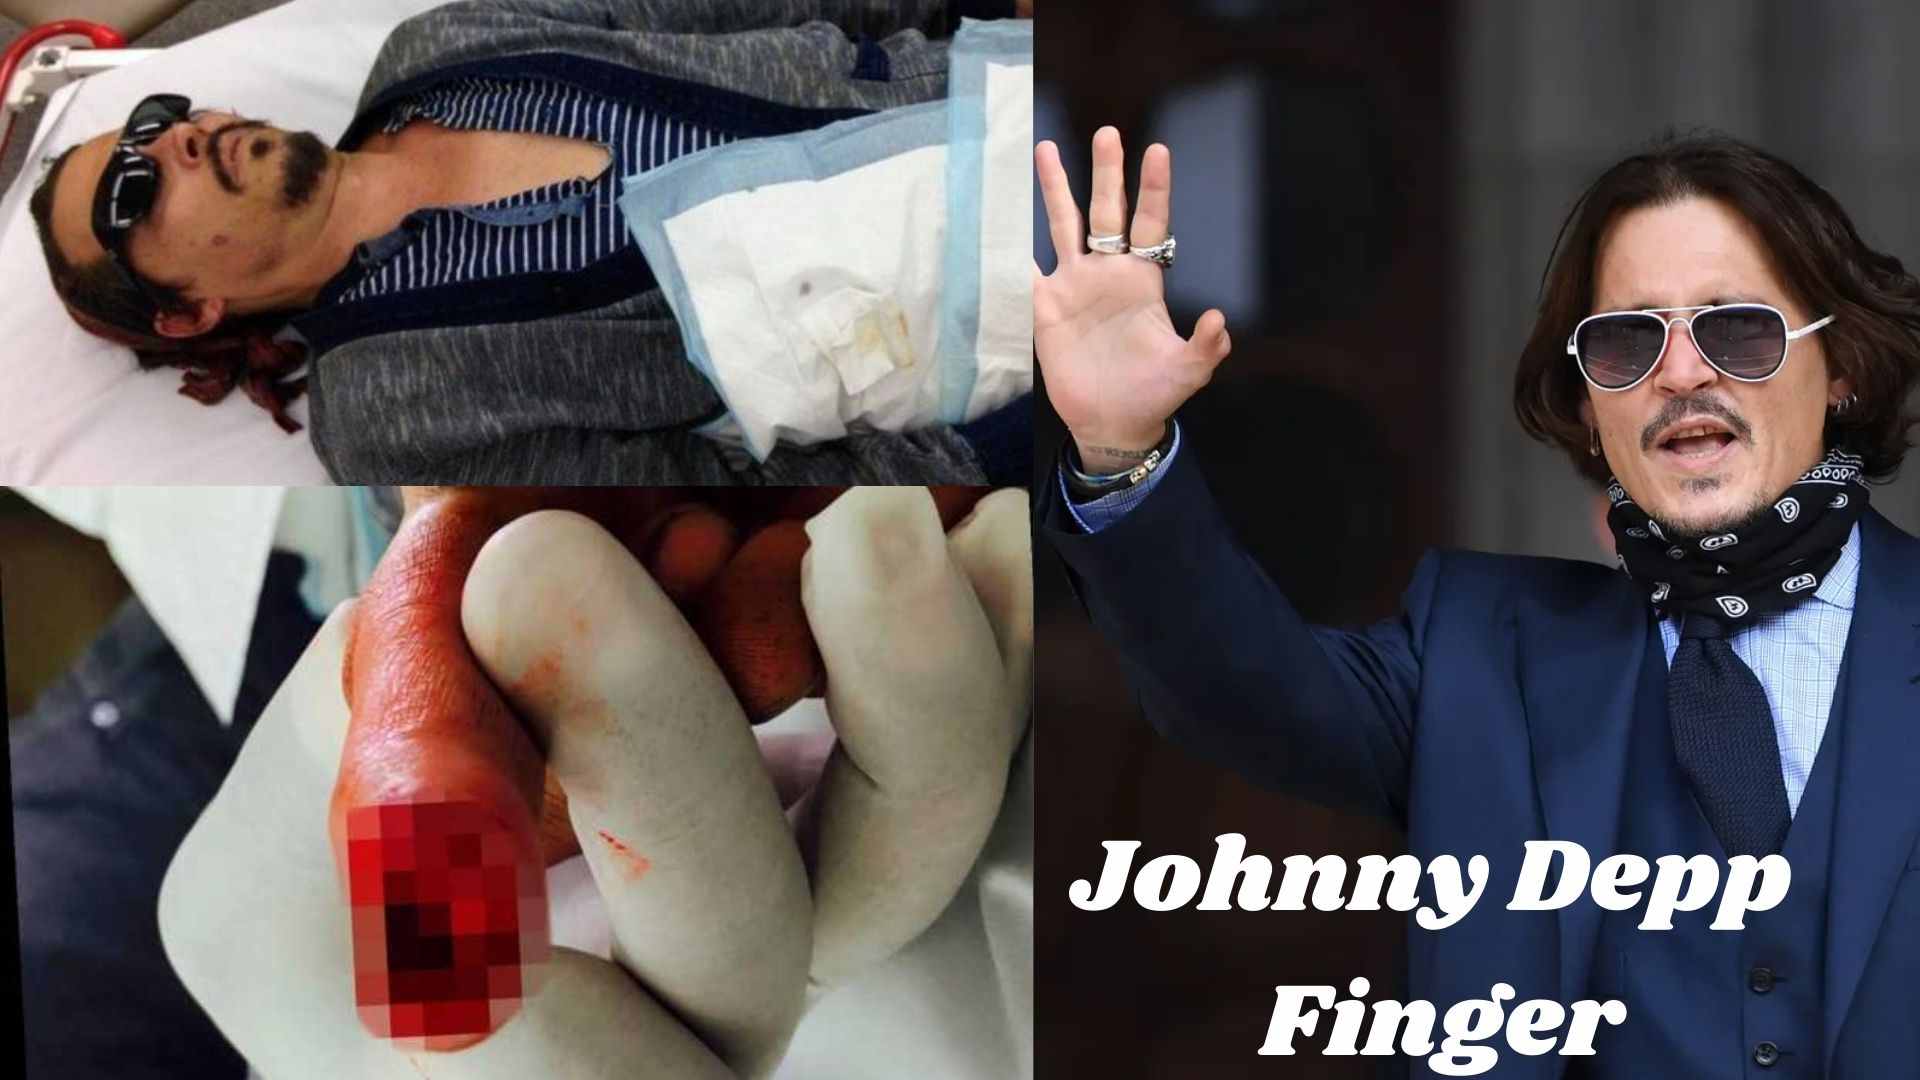 Johnny Depp Finger wallpaper and images